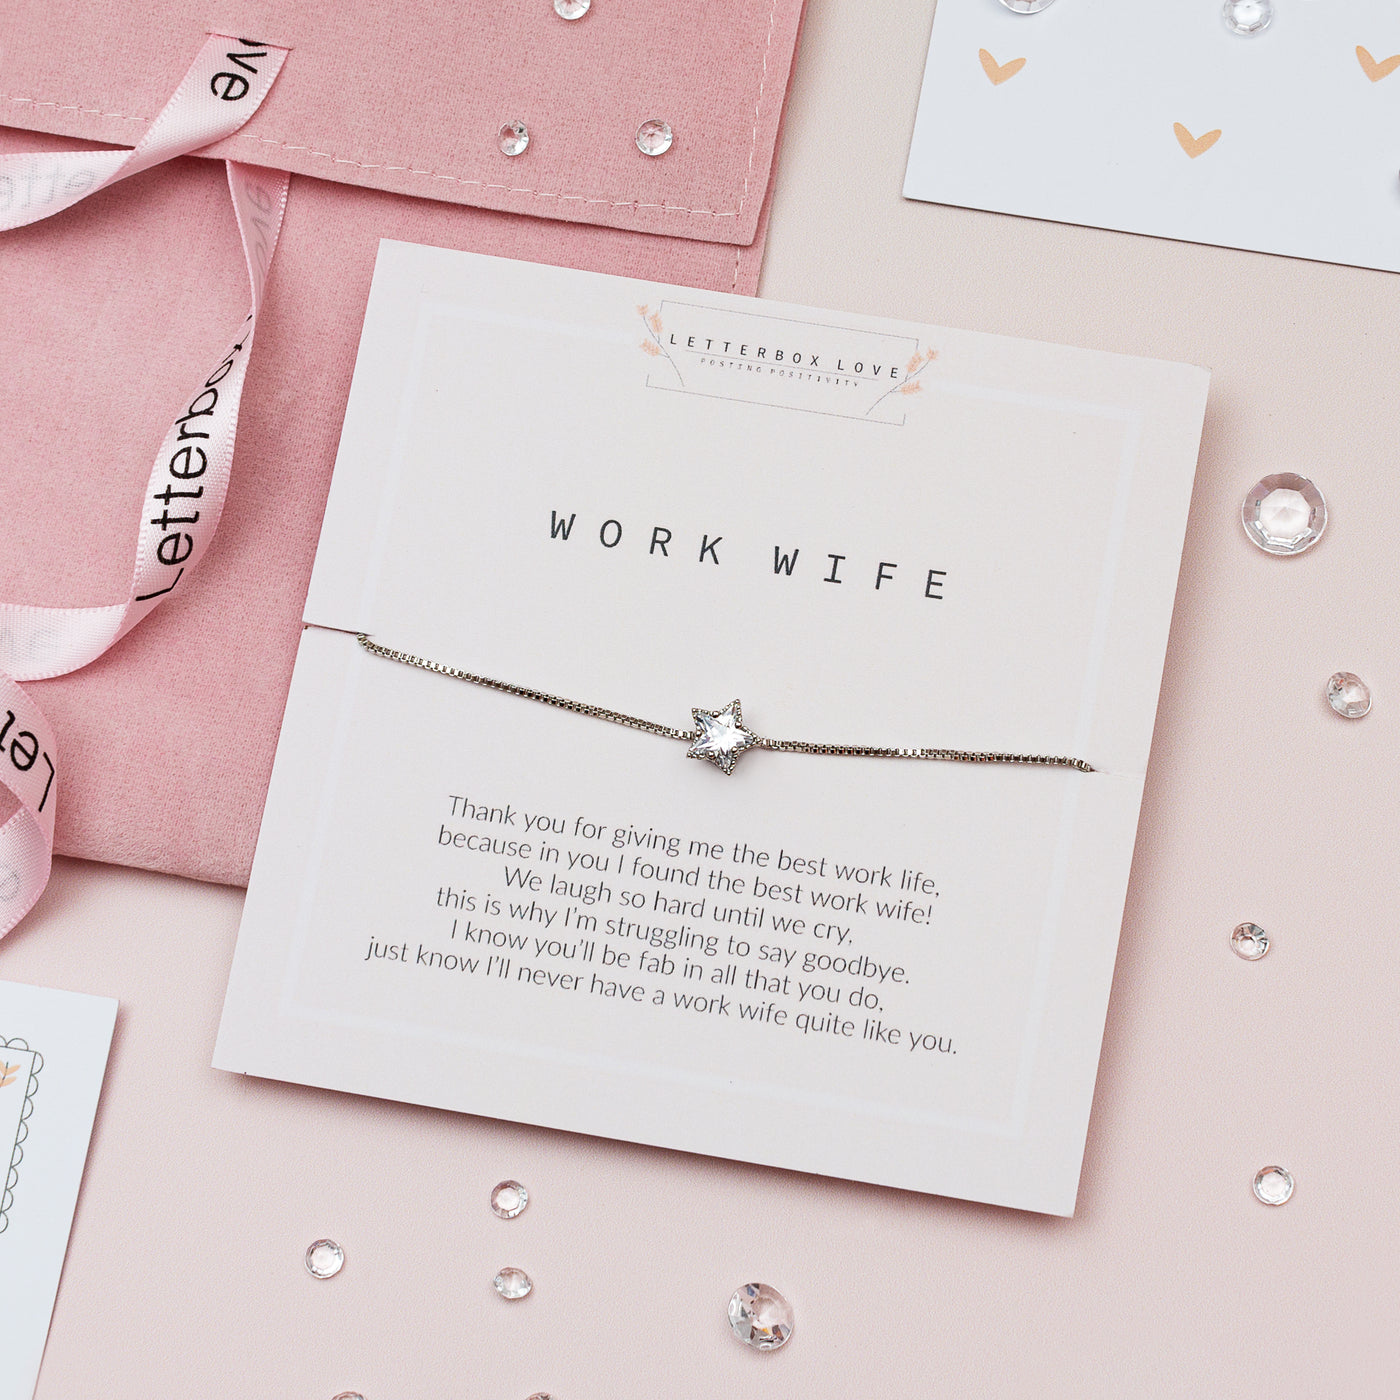 Work Wife Bracelet - Leaving Gift - letterboxlove